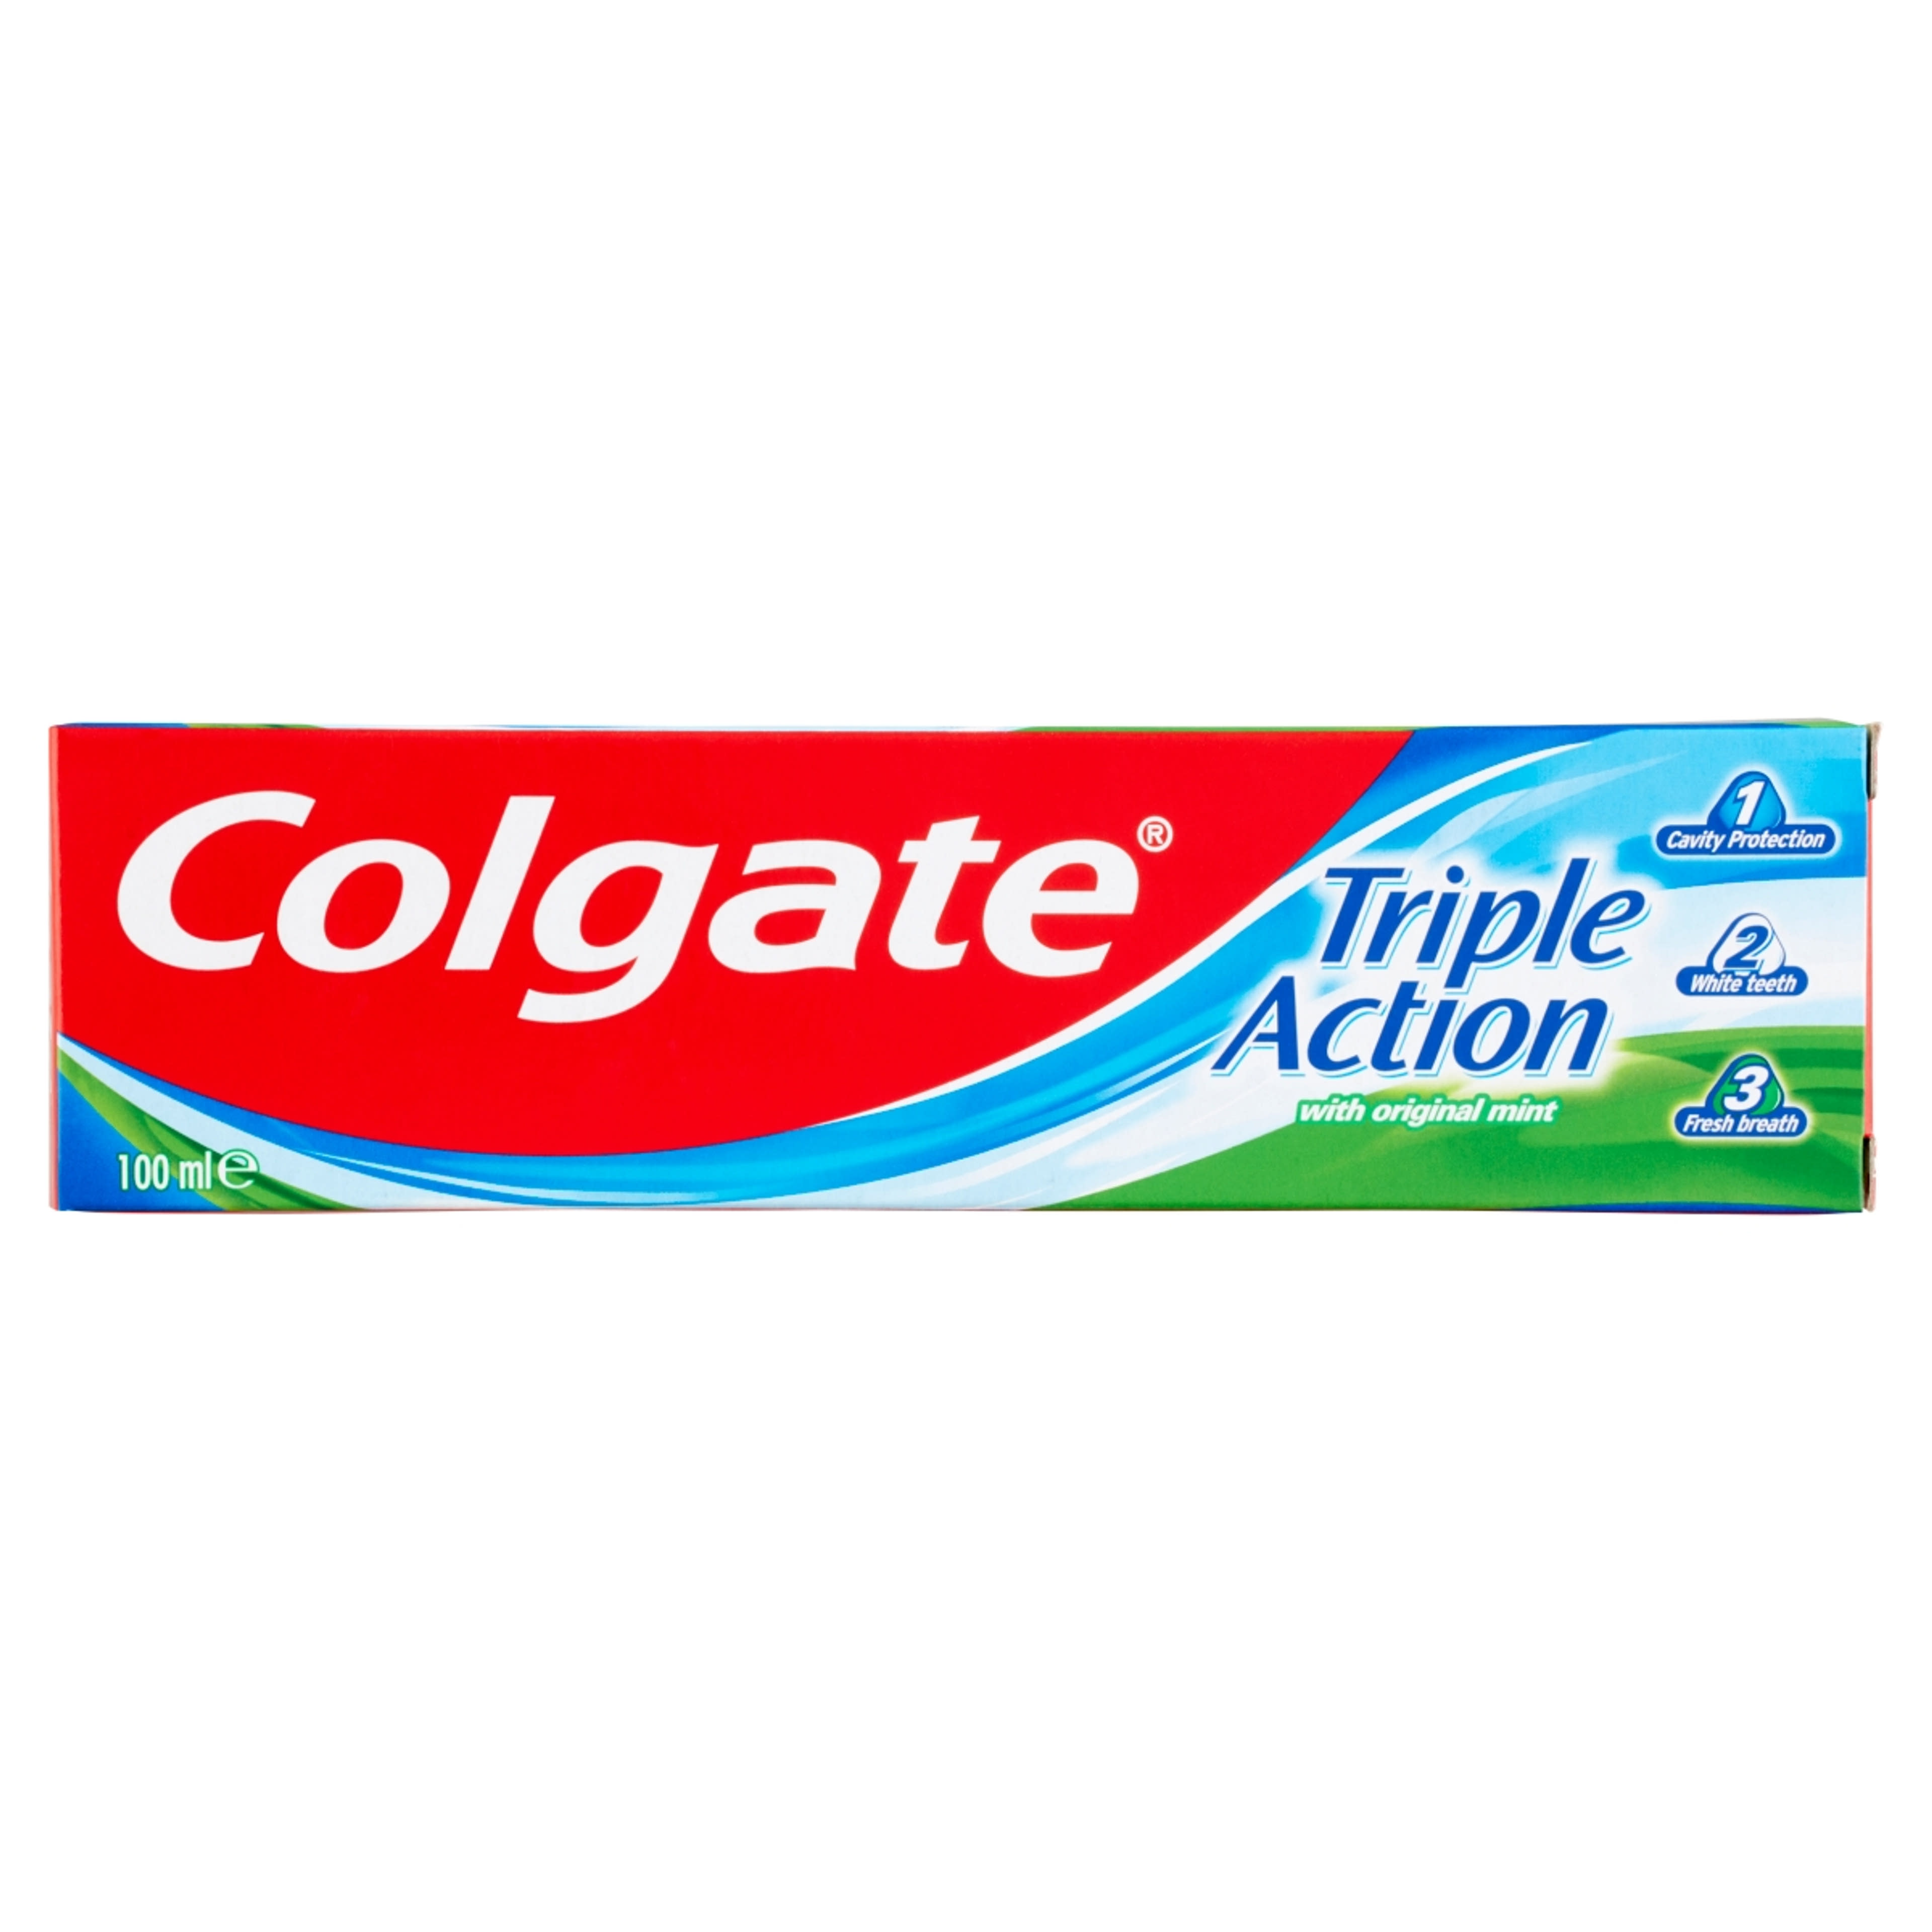 Colgate Triple Action fogkrém - 100 ml